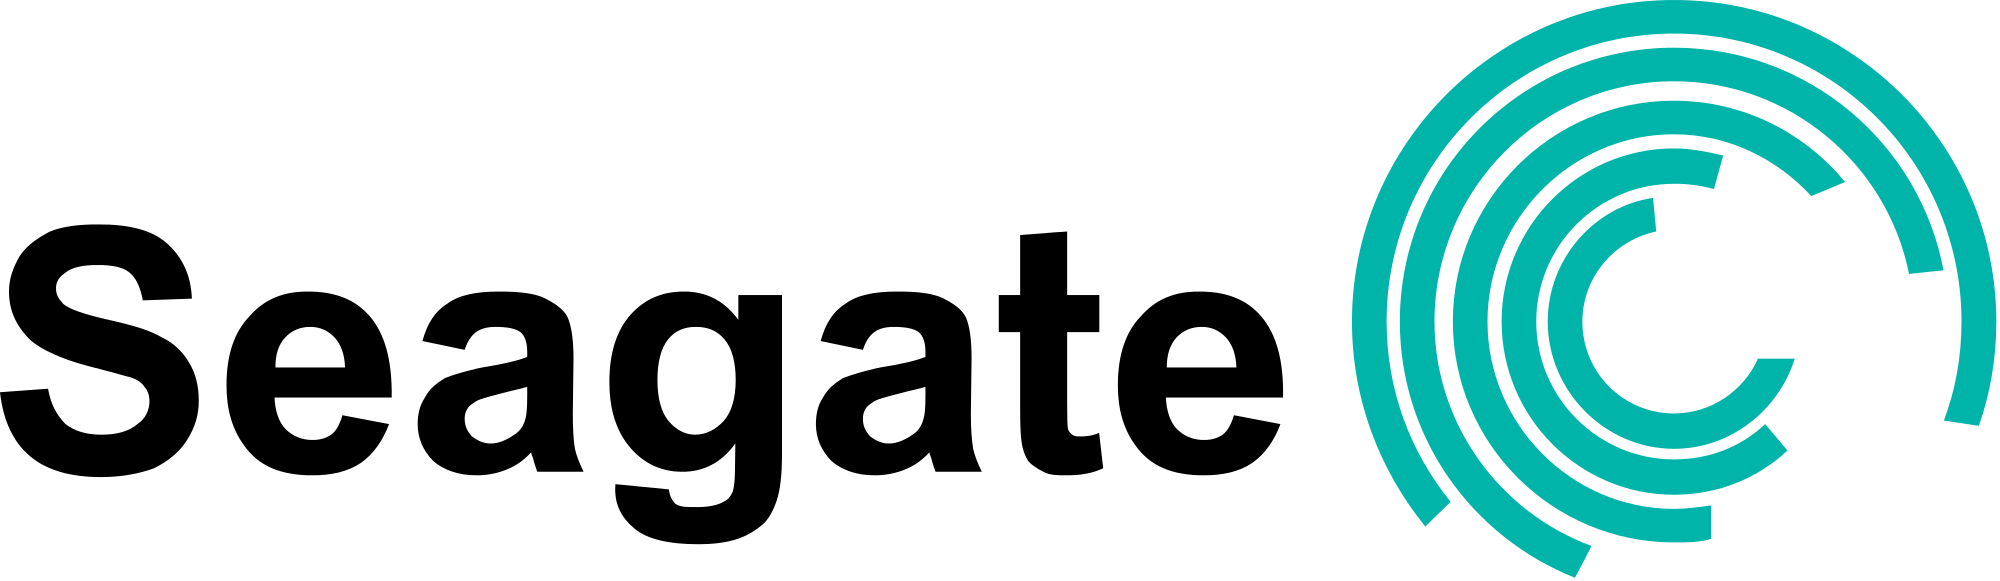 Seagate Logo - File:Seagate-Logo.svg - Wikimedia Commons